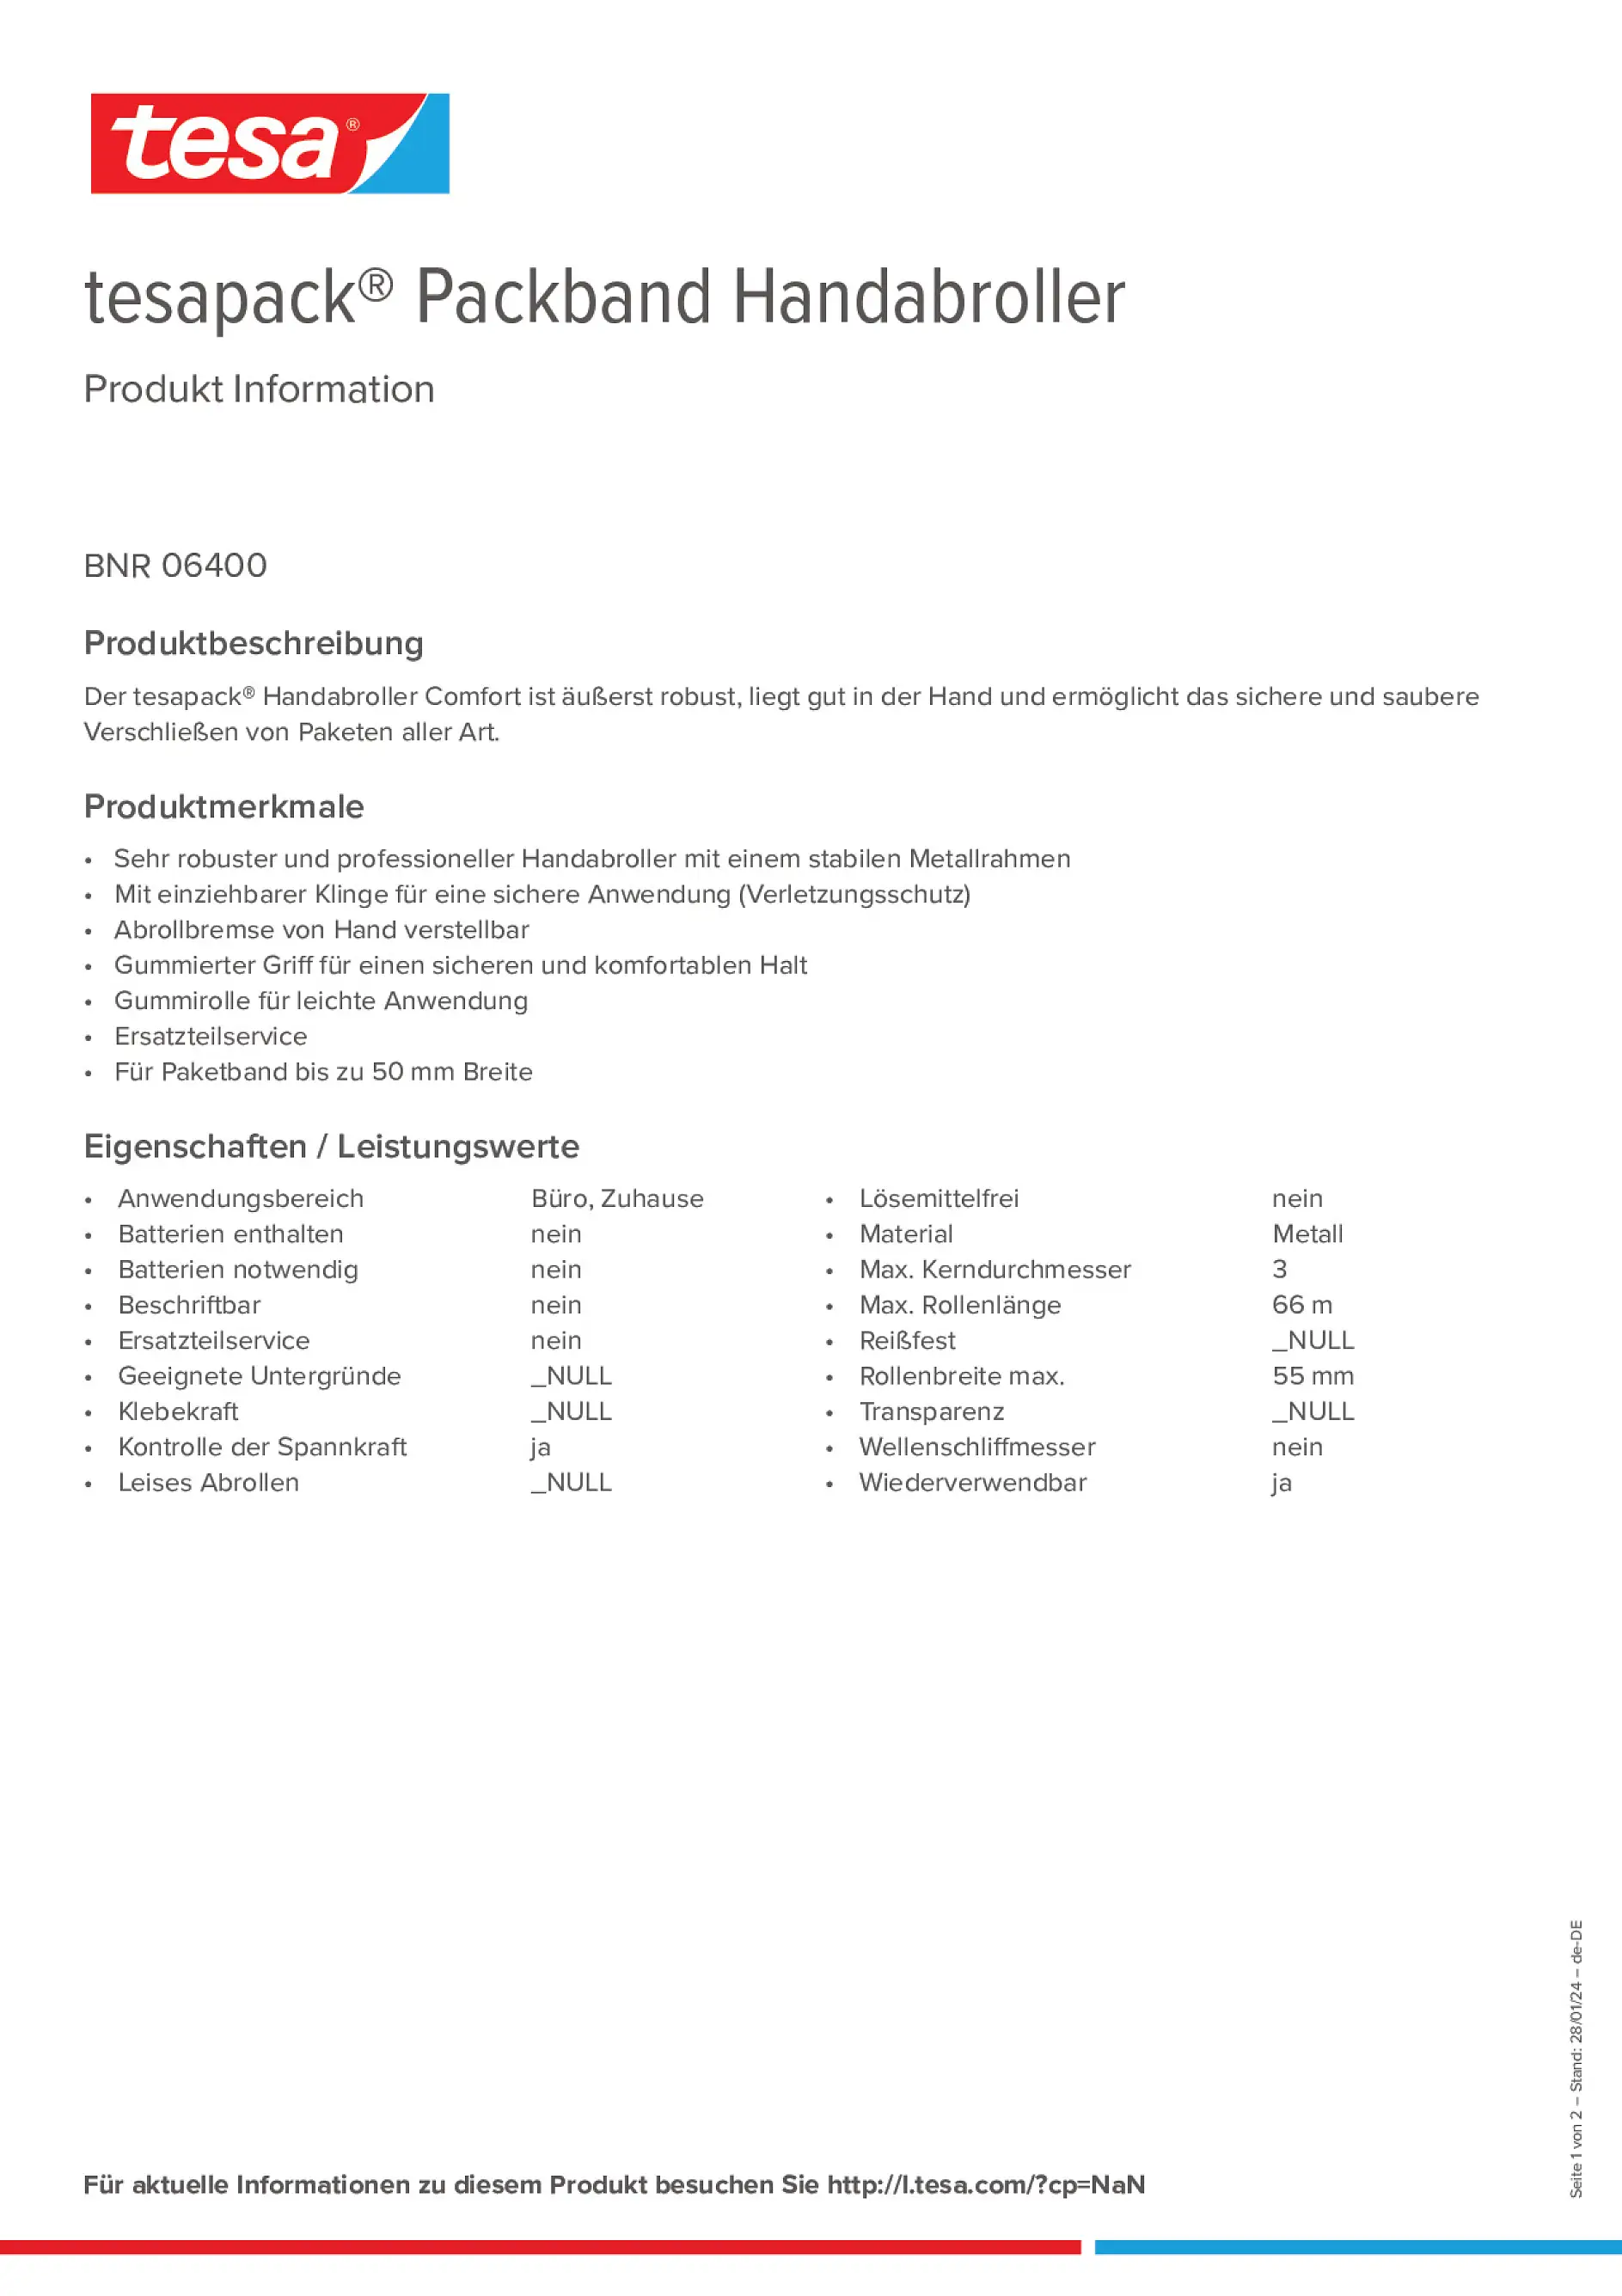 Product information_tesapack® 06400_de-DE